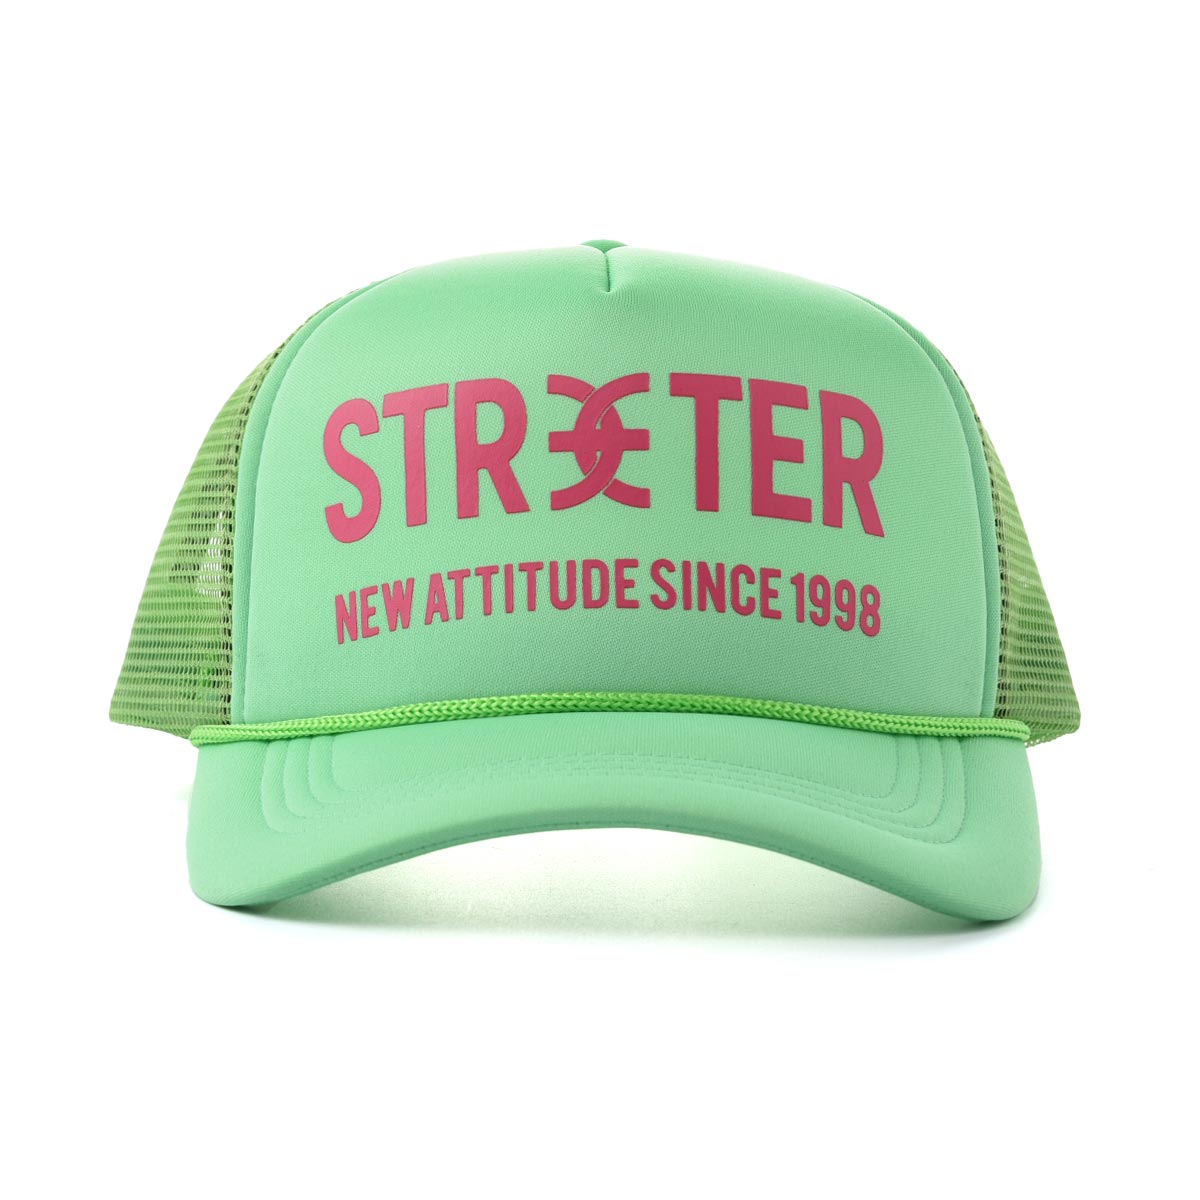 Streeter green casual foam trucker hat for women and men